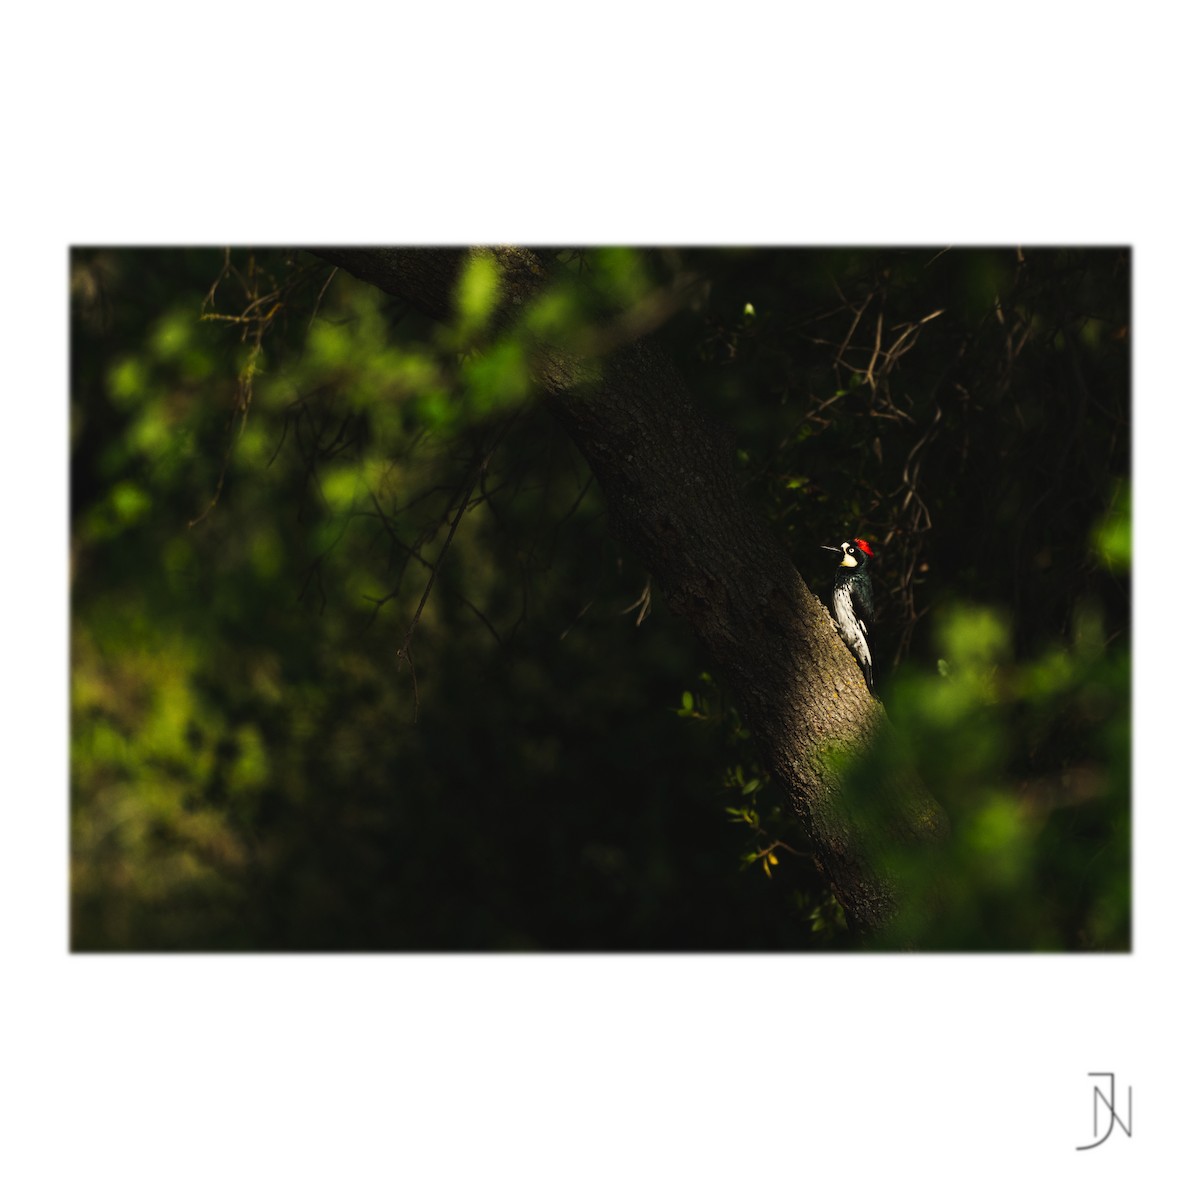 Acorn Woodpecker - Jeremy Neipp